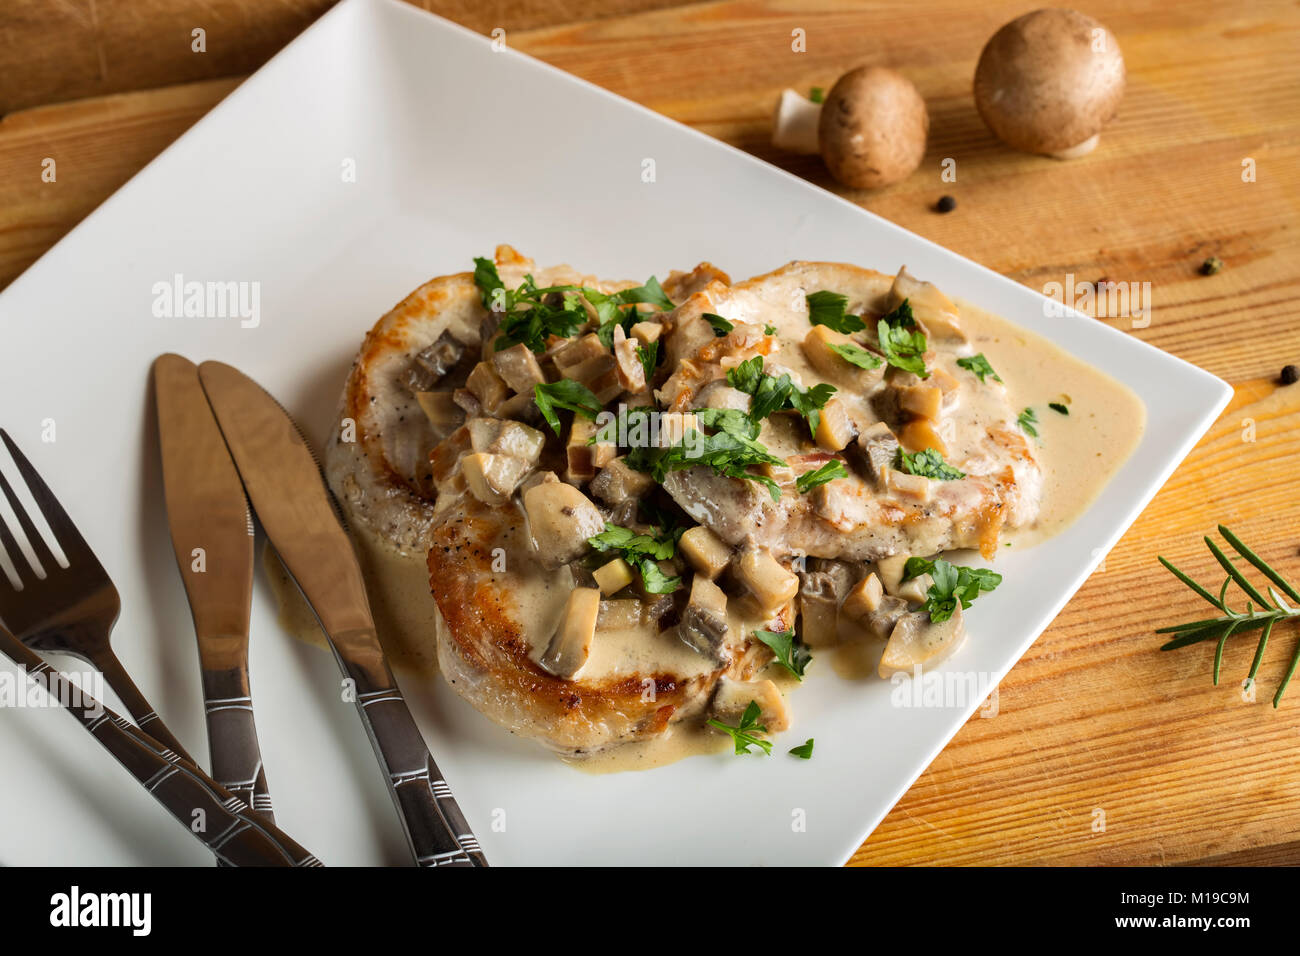 Surlonge de porc avec sauce blanche faite à partir de crème sure et de champignons avec deux couteaux et fourchettes Banque D'Images